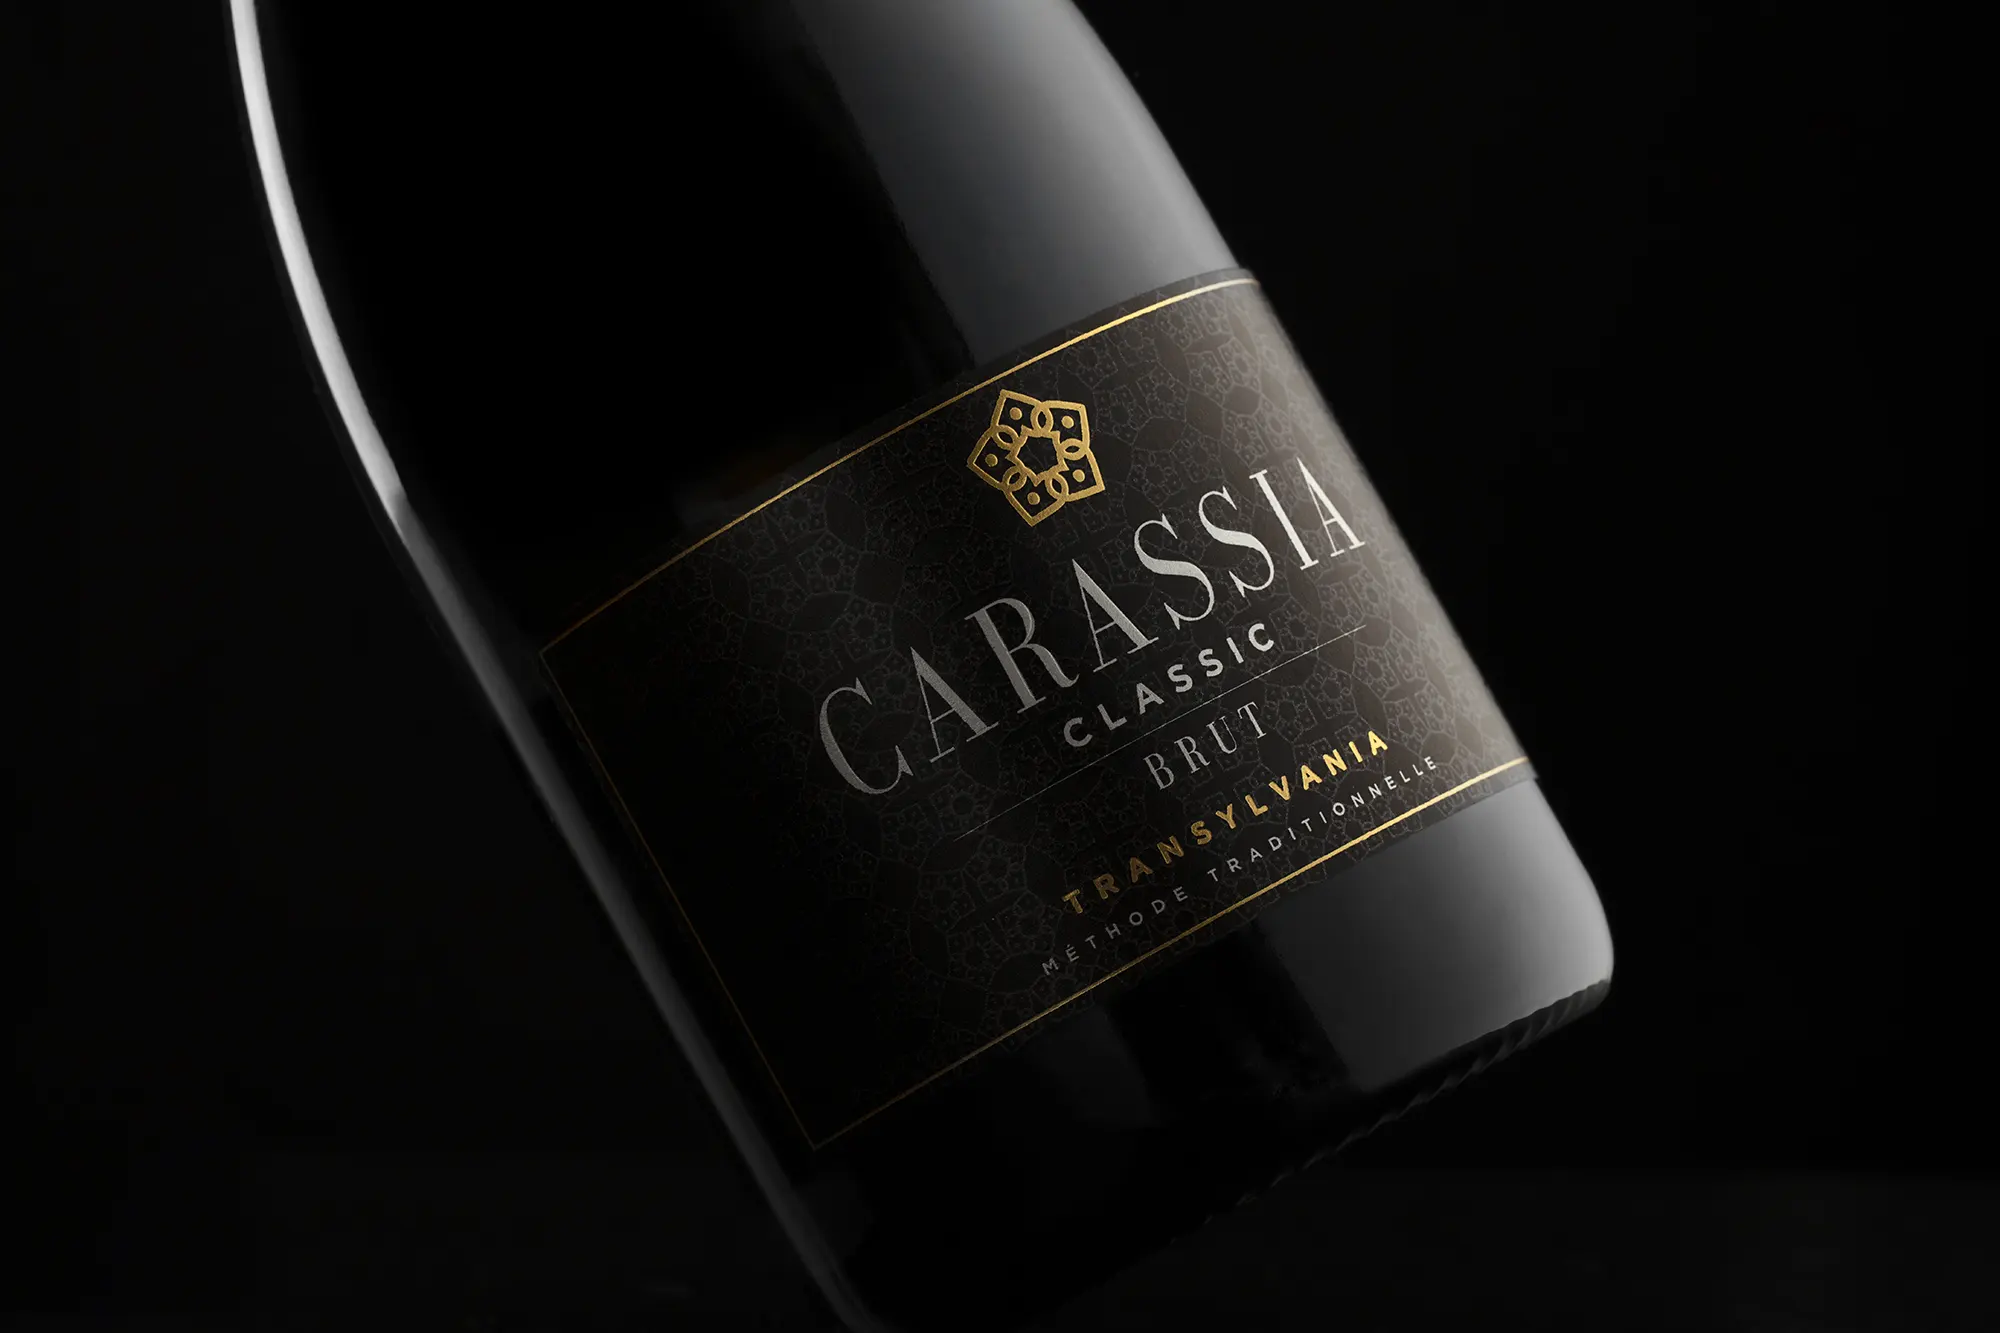 Carrasia Sparkling Wine